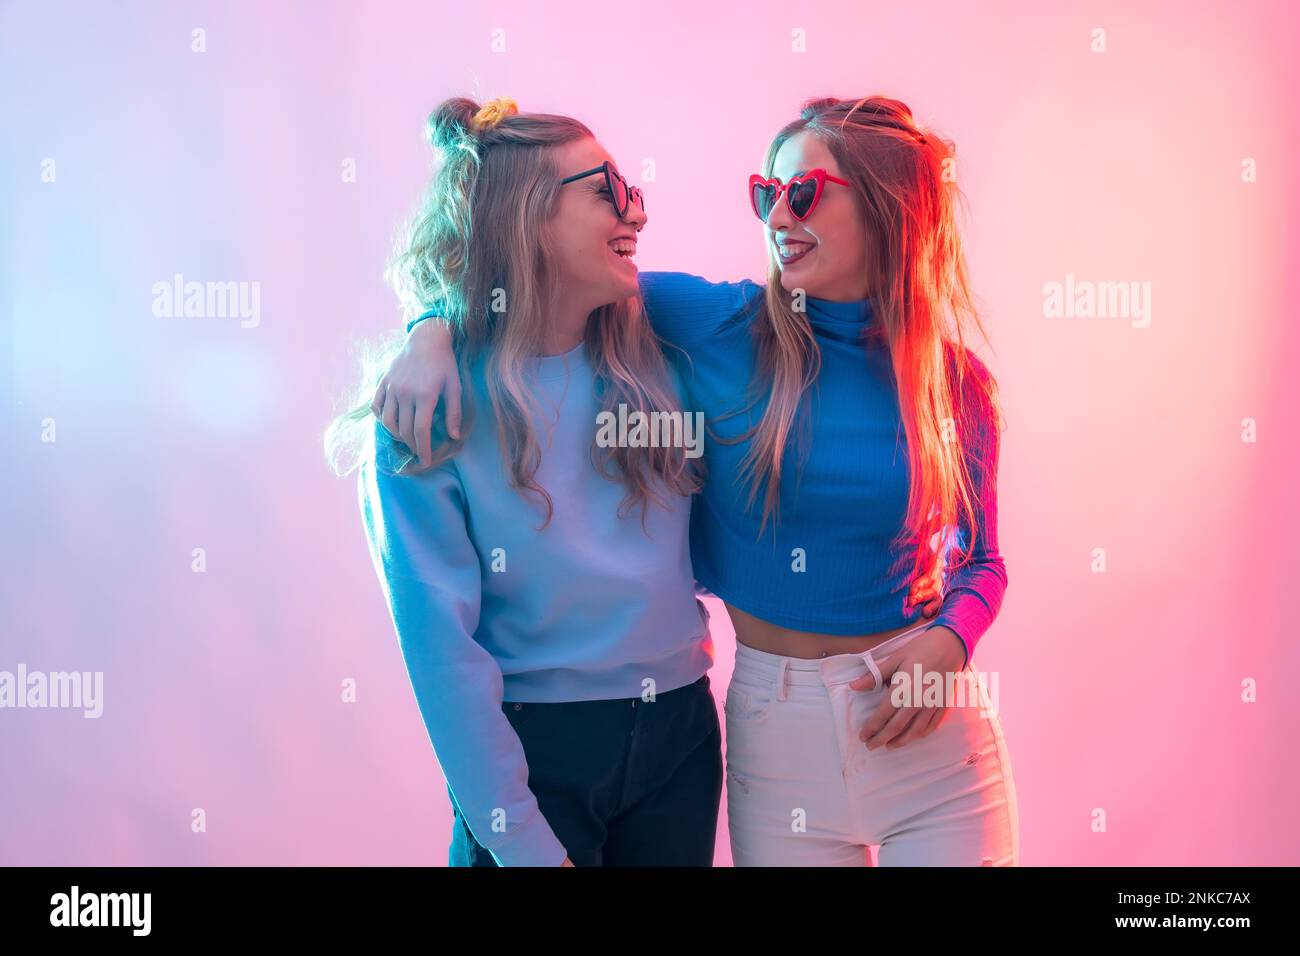 Zwei junge blonde weiße Frauen, die in der Disco tanzen, lächelnd und umarmt porträtieren Stockfoto